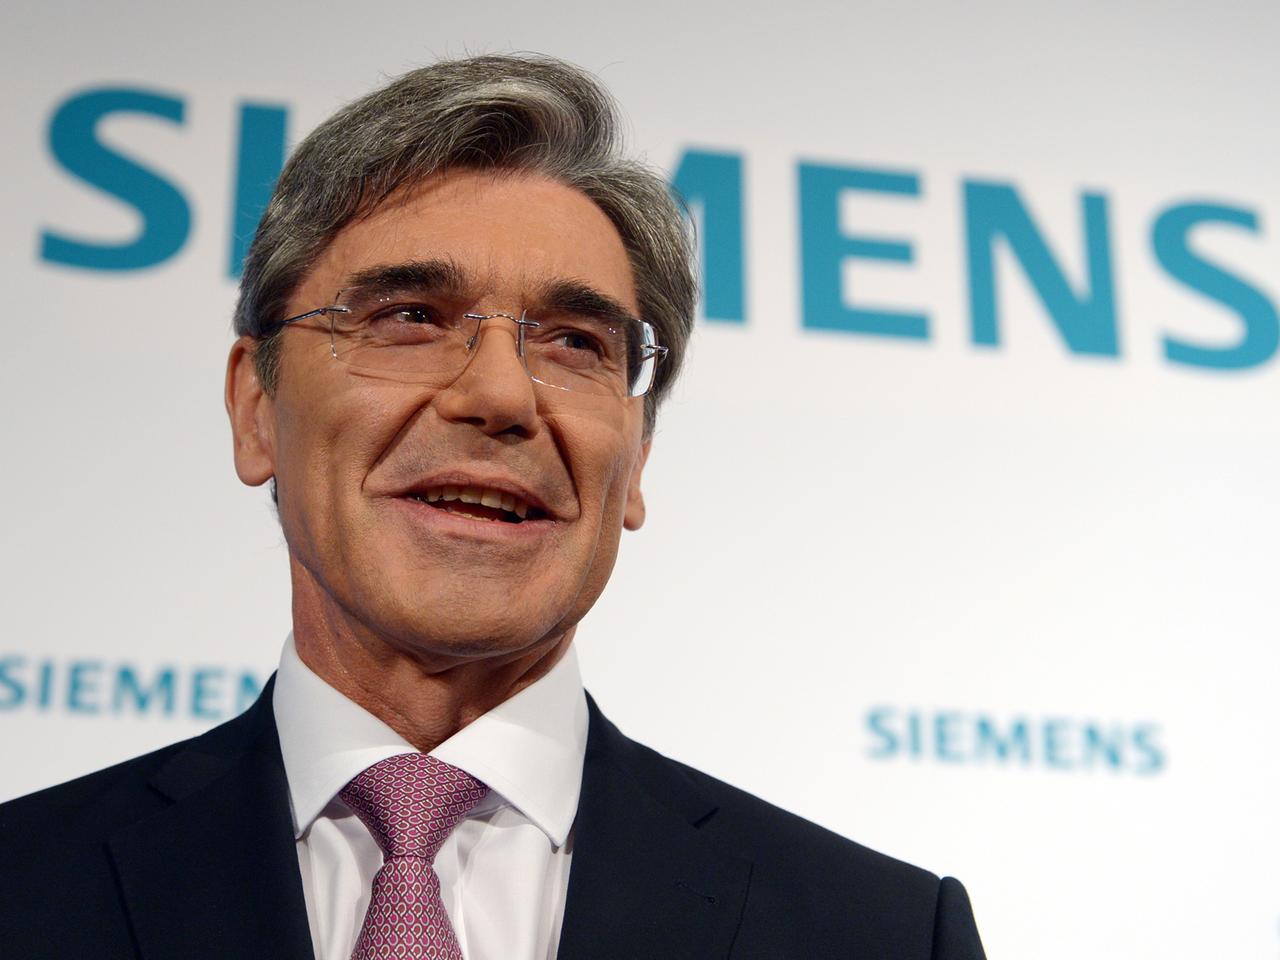 Der Vorstandsvorsitzende der Siemens AG, Joe Kaeser, vor der Siemens Halbjahres-Pressekonferenz am 07.05.2014 in Berlin. 